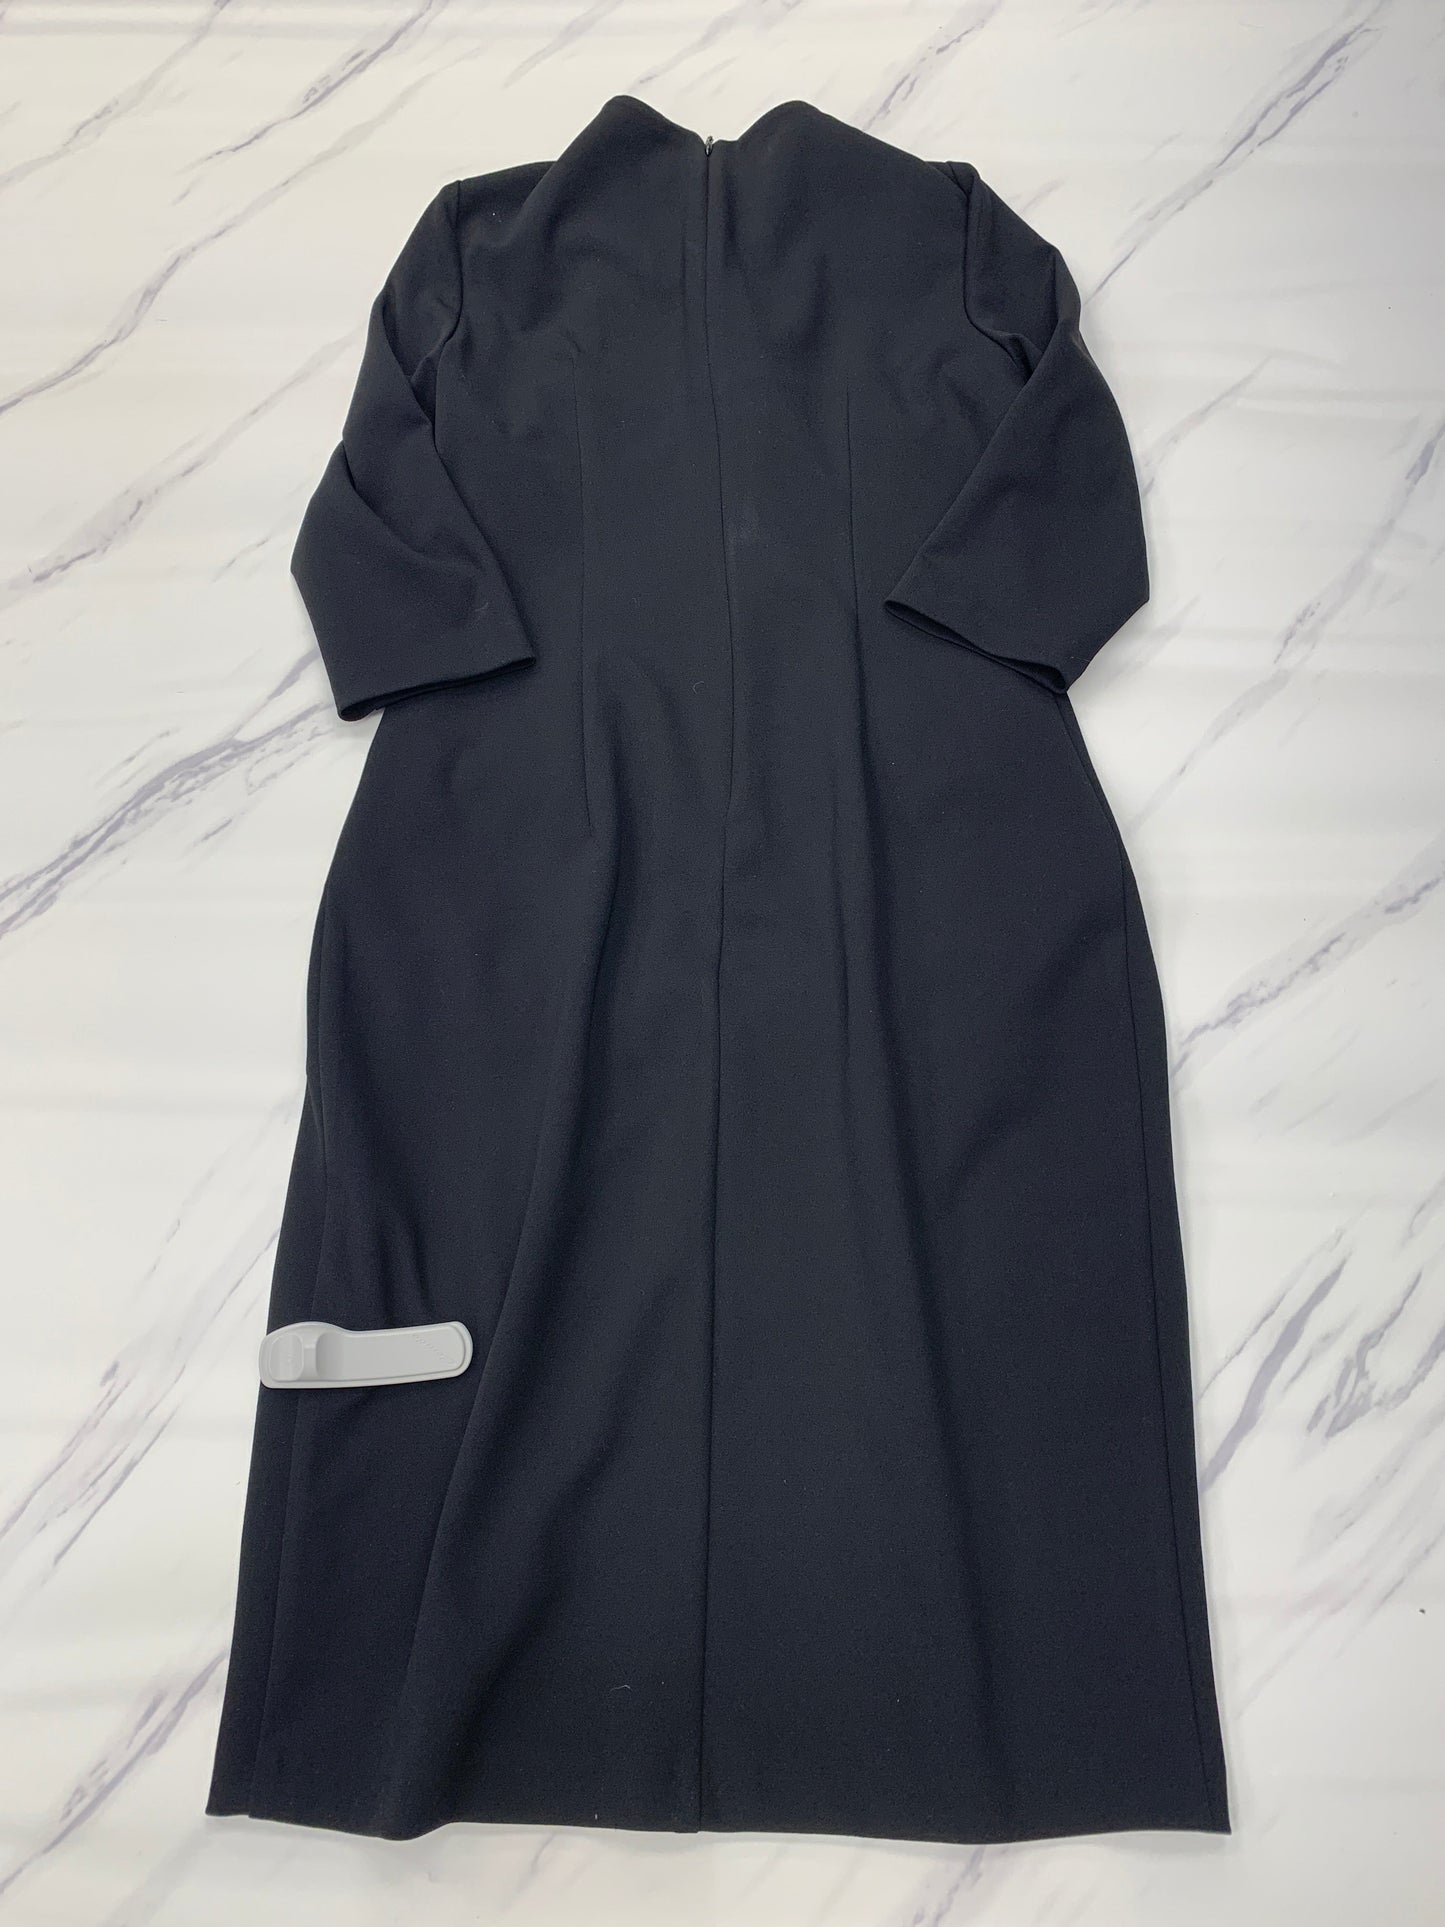 Dress Casual Midi By Joseph Ribkoff  Size: 8